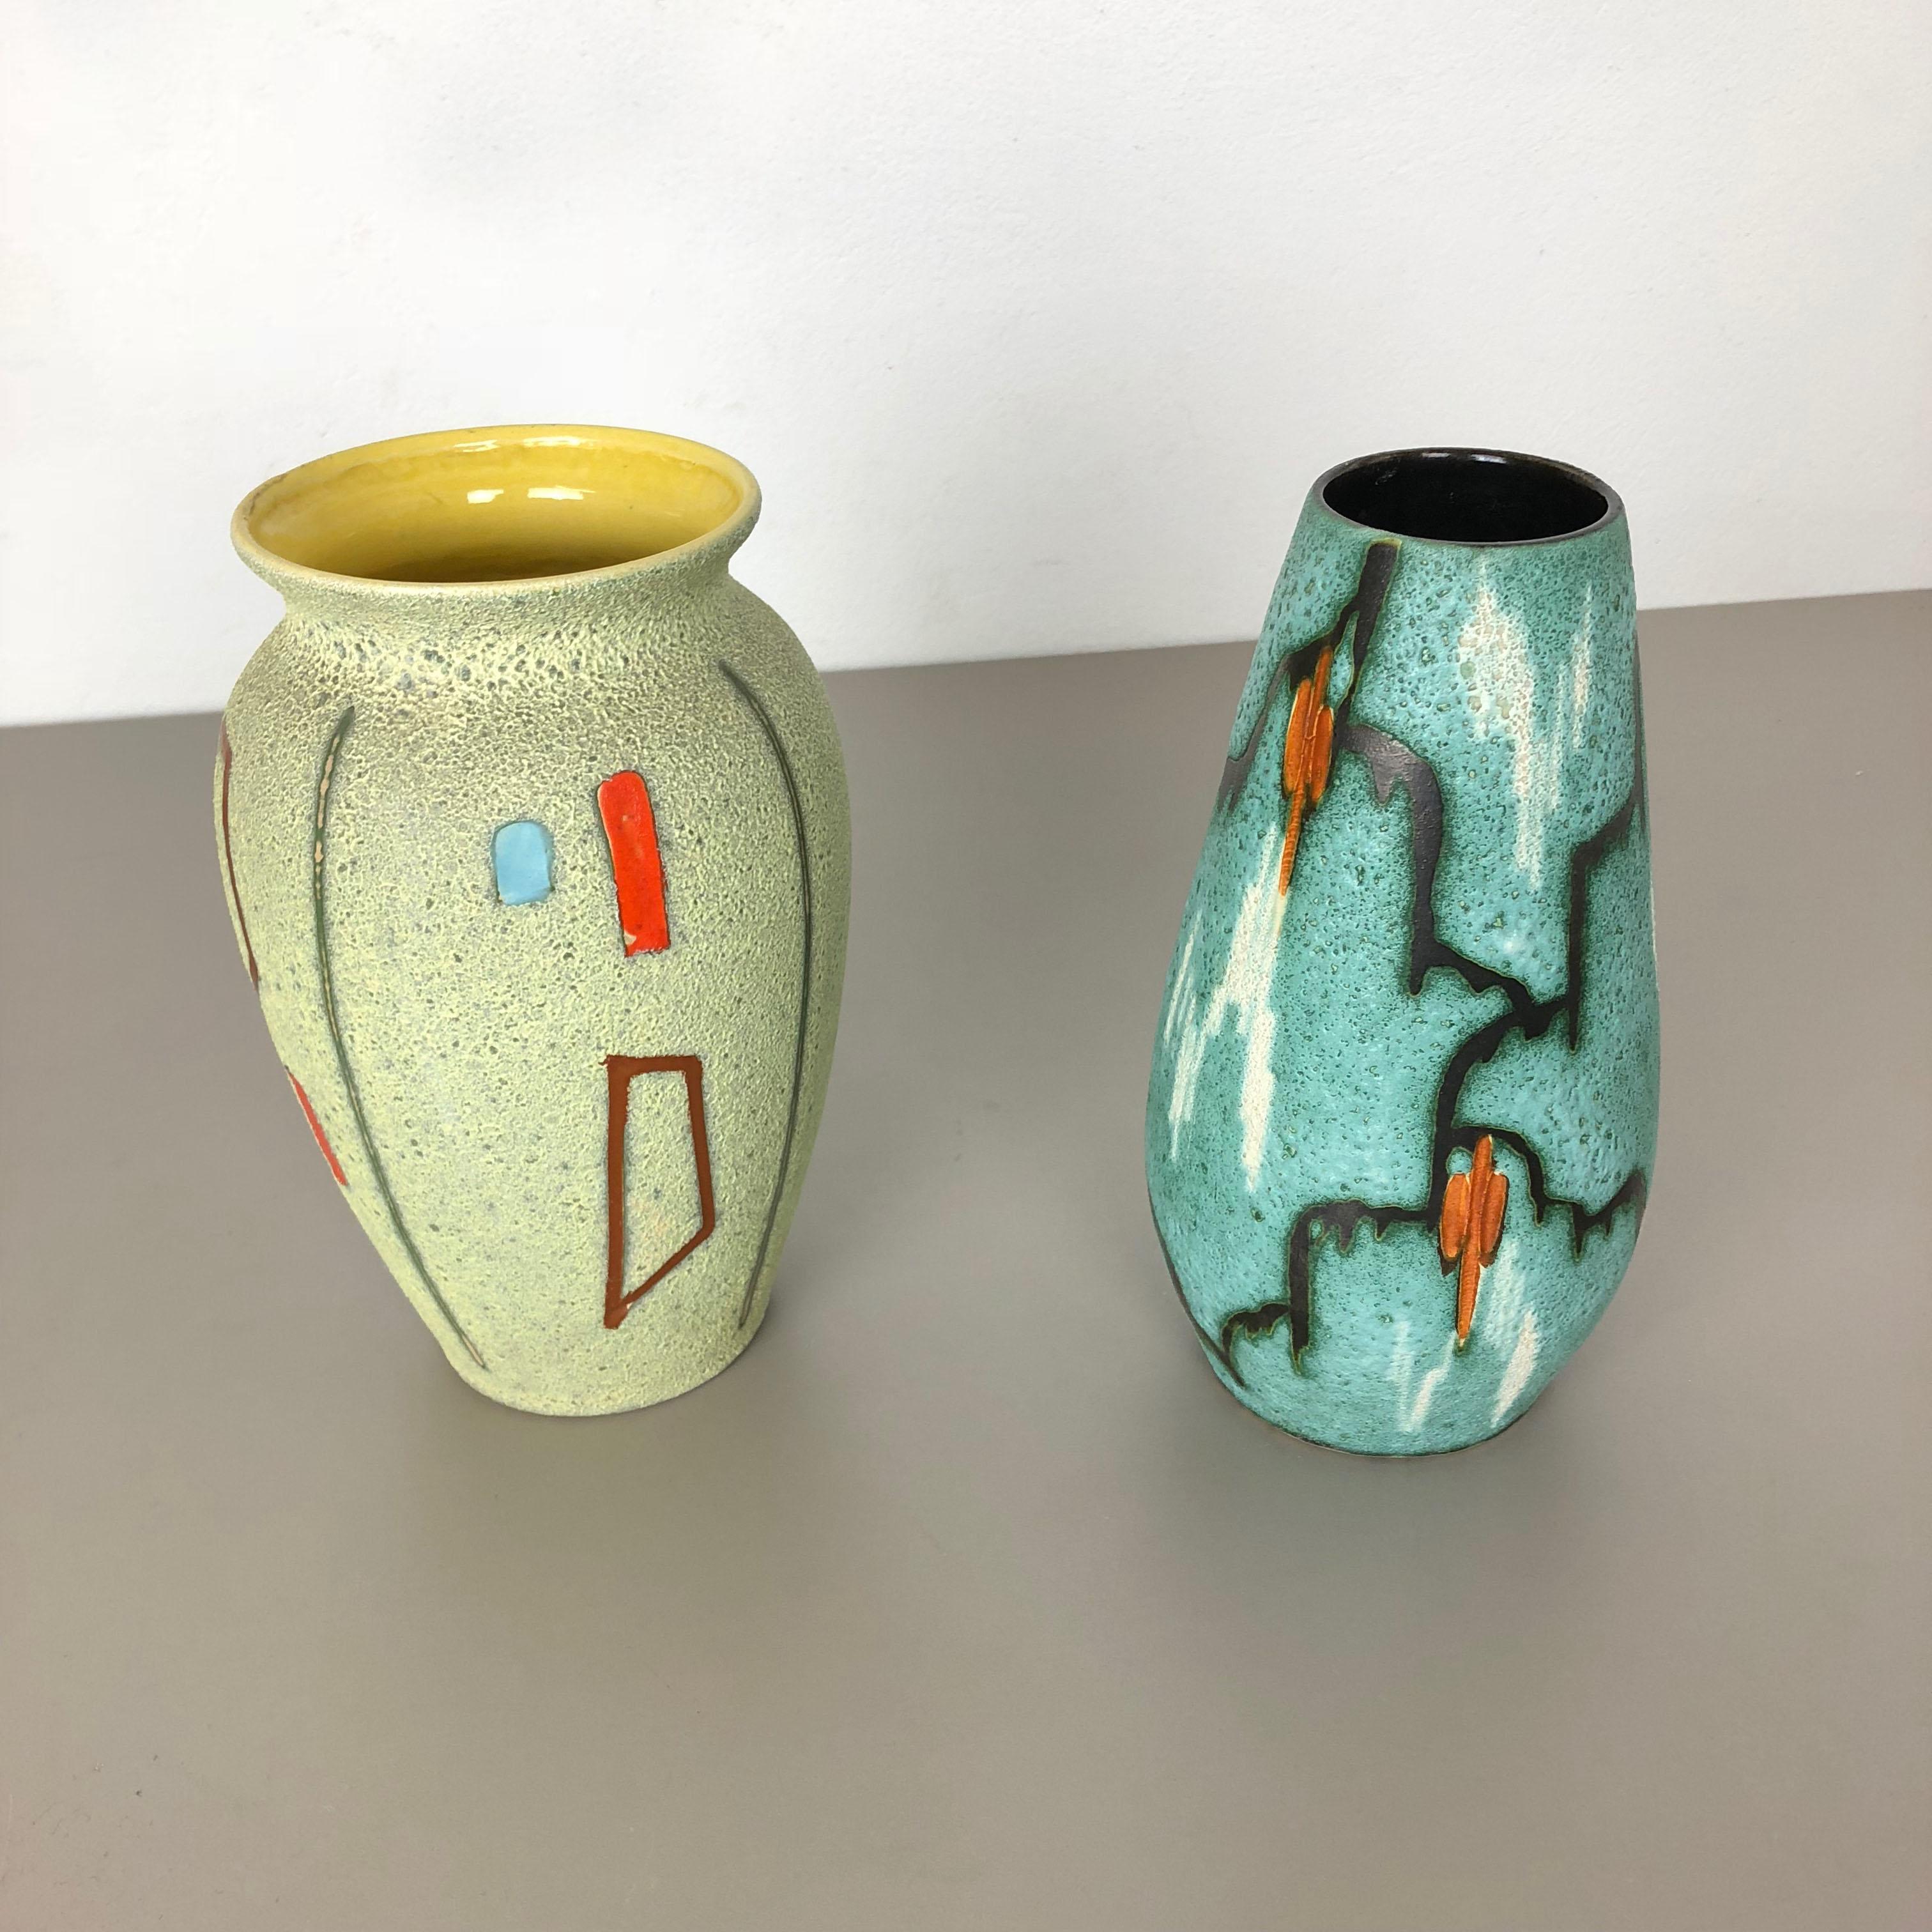 Artikel:

Satz von zwei abstrakten bunten Vasen 



Produzent:

Scheurich, Deutschland



Jahrzehnt:

1960s


Diese originalen Vintage-Vasen wurden in den 1960er Jahren in Deutschland hergestellt. Es ist aus Keramik mit abstrakter